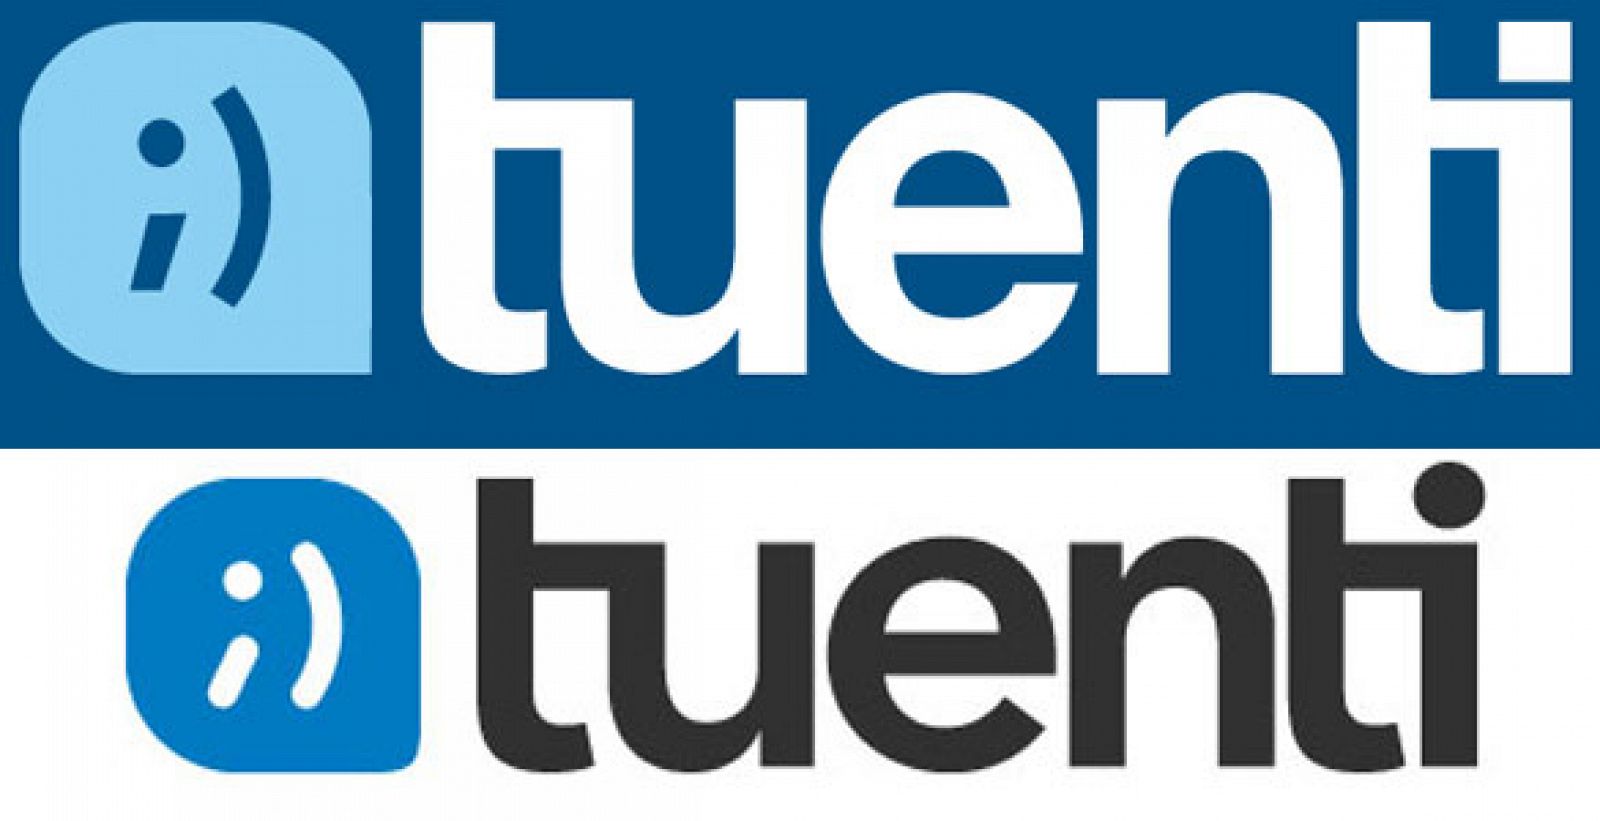 El nuevo logo de Tuenti (debajo), más azul y redondeado